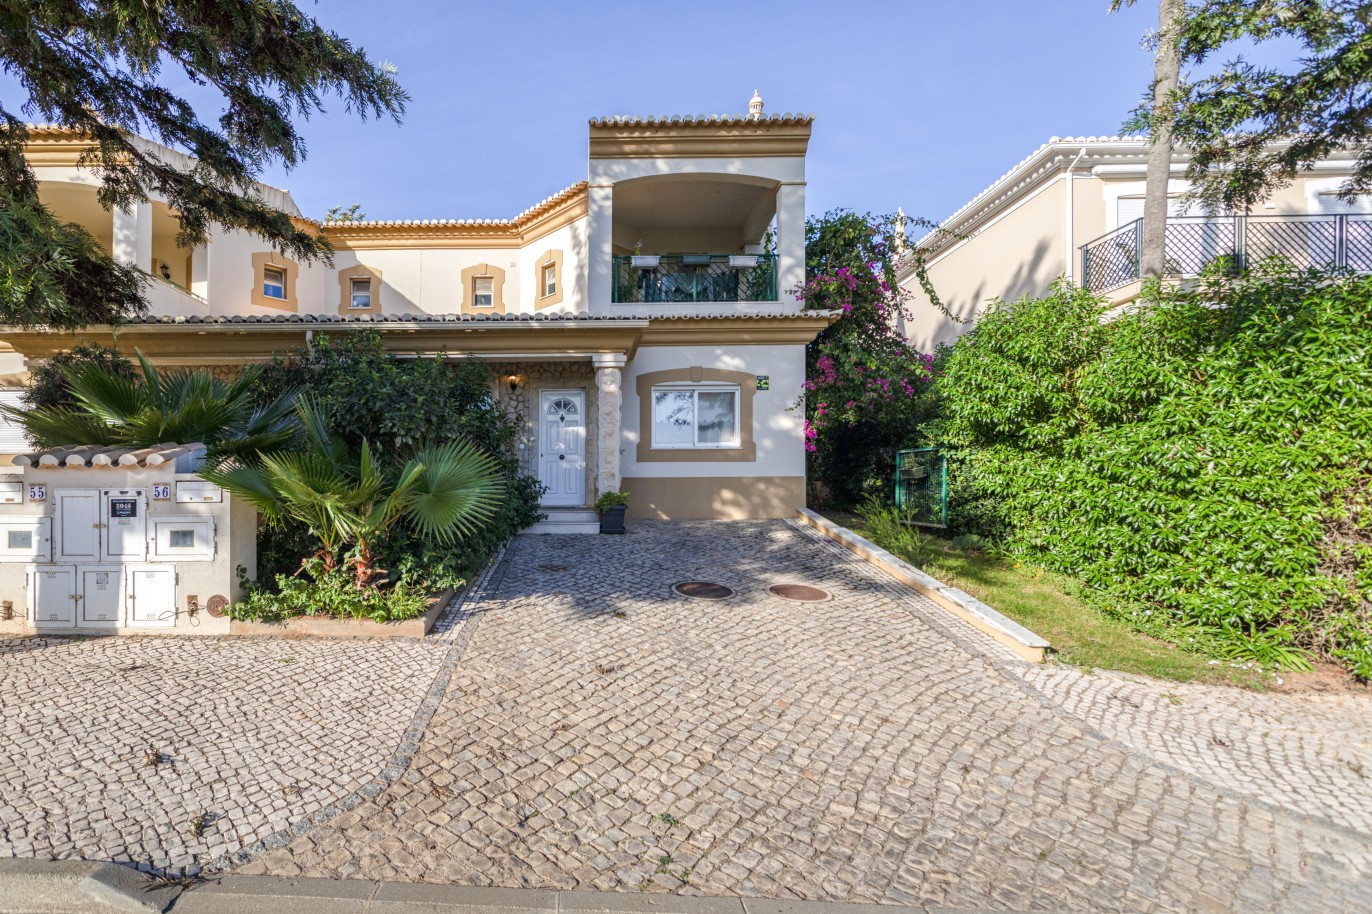 Villa, 3 dormitorios, en condominio privado, en venta en Lagos, Algarve_246290